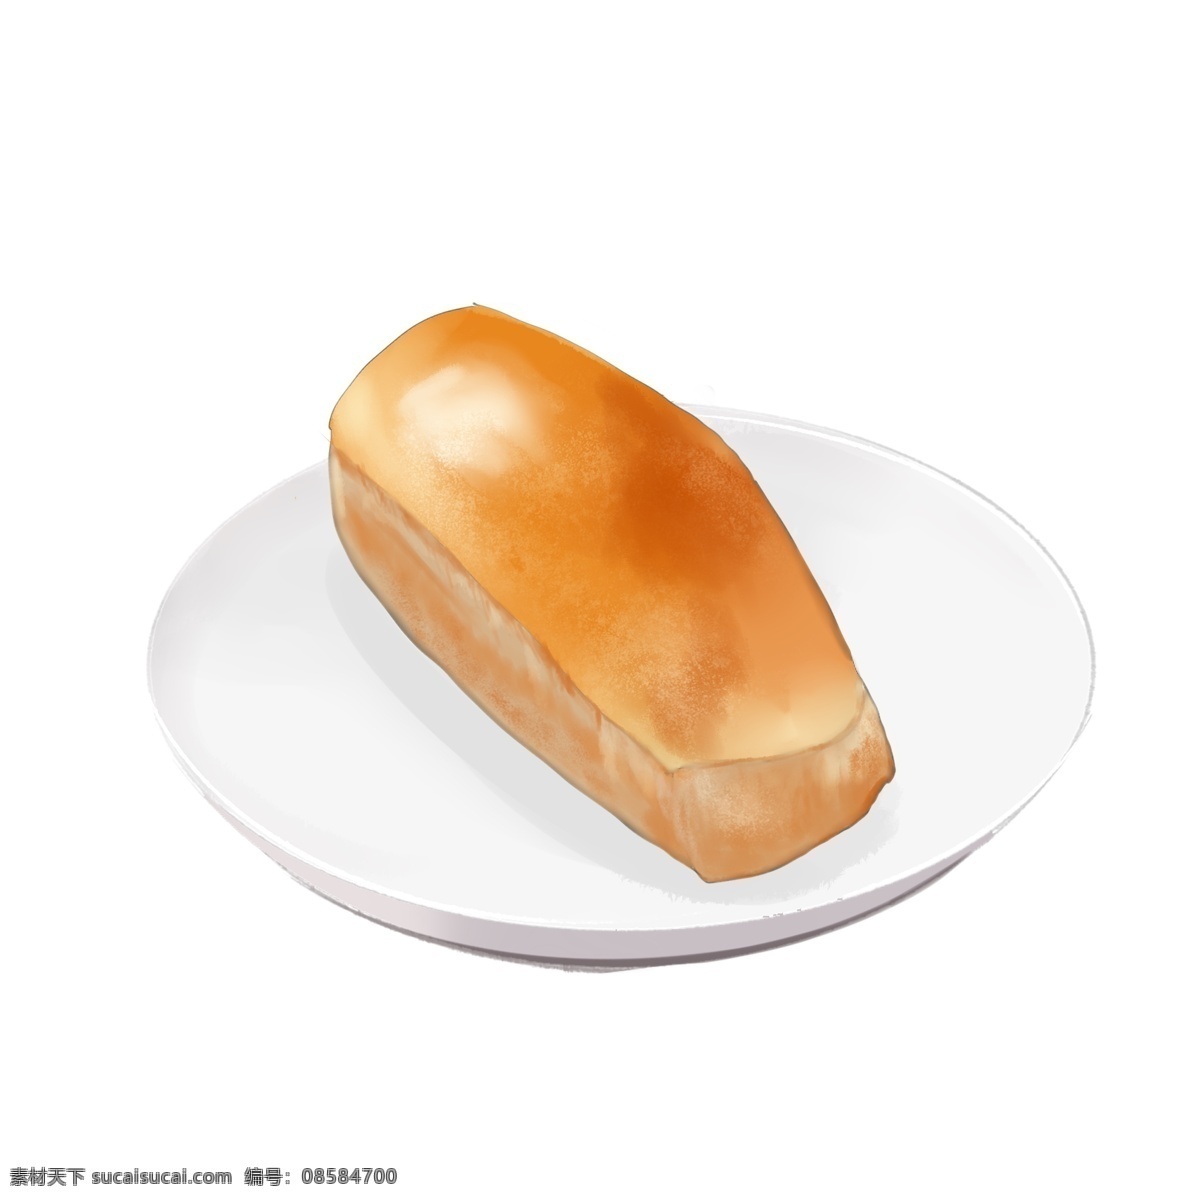 手绘 写实 食物 各种 美味 面包 手绘面包 实物插画 营养早餐 烤面包 法式面包 一盘面包 甜点 零食 甜食 美味面包 焦香味浓